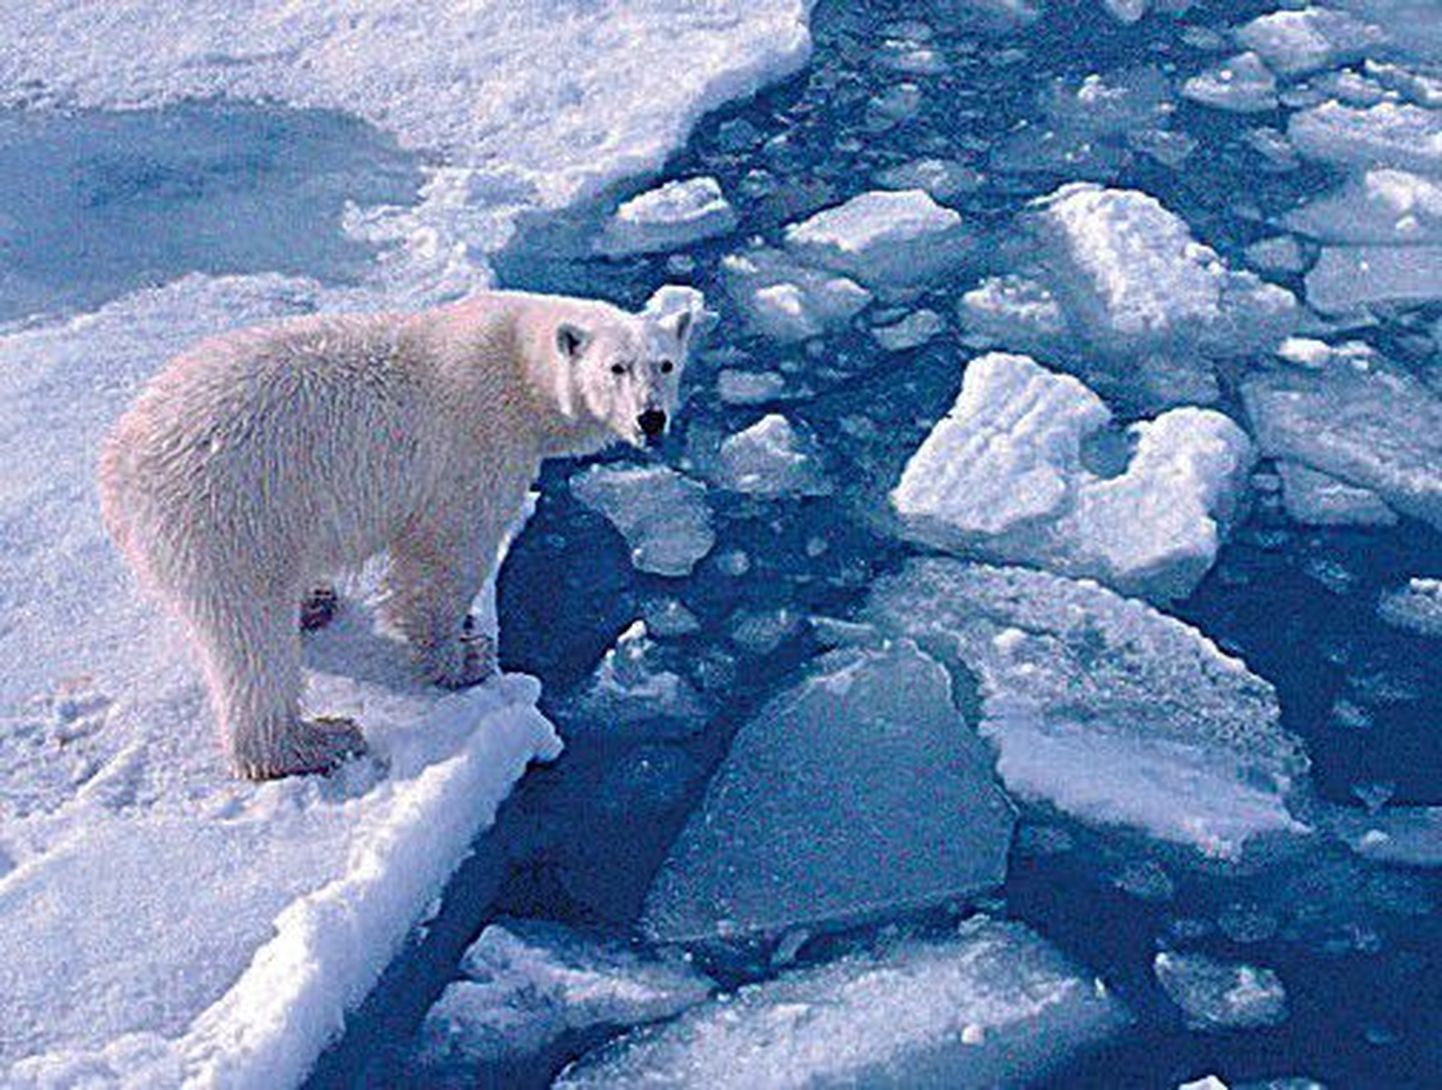 Arktika jää all peituvad hiiglaslikud gaasi- ja naftavarud.